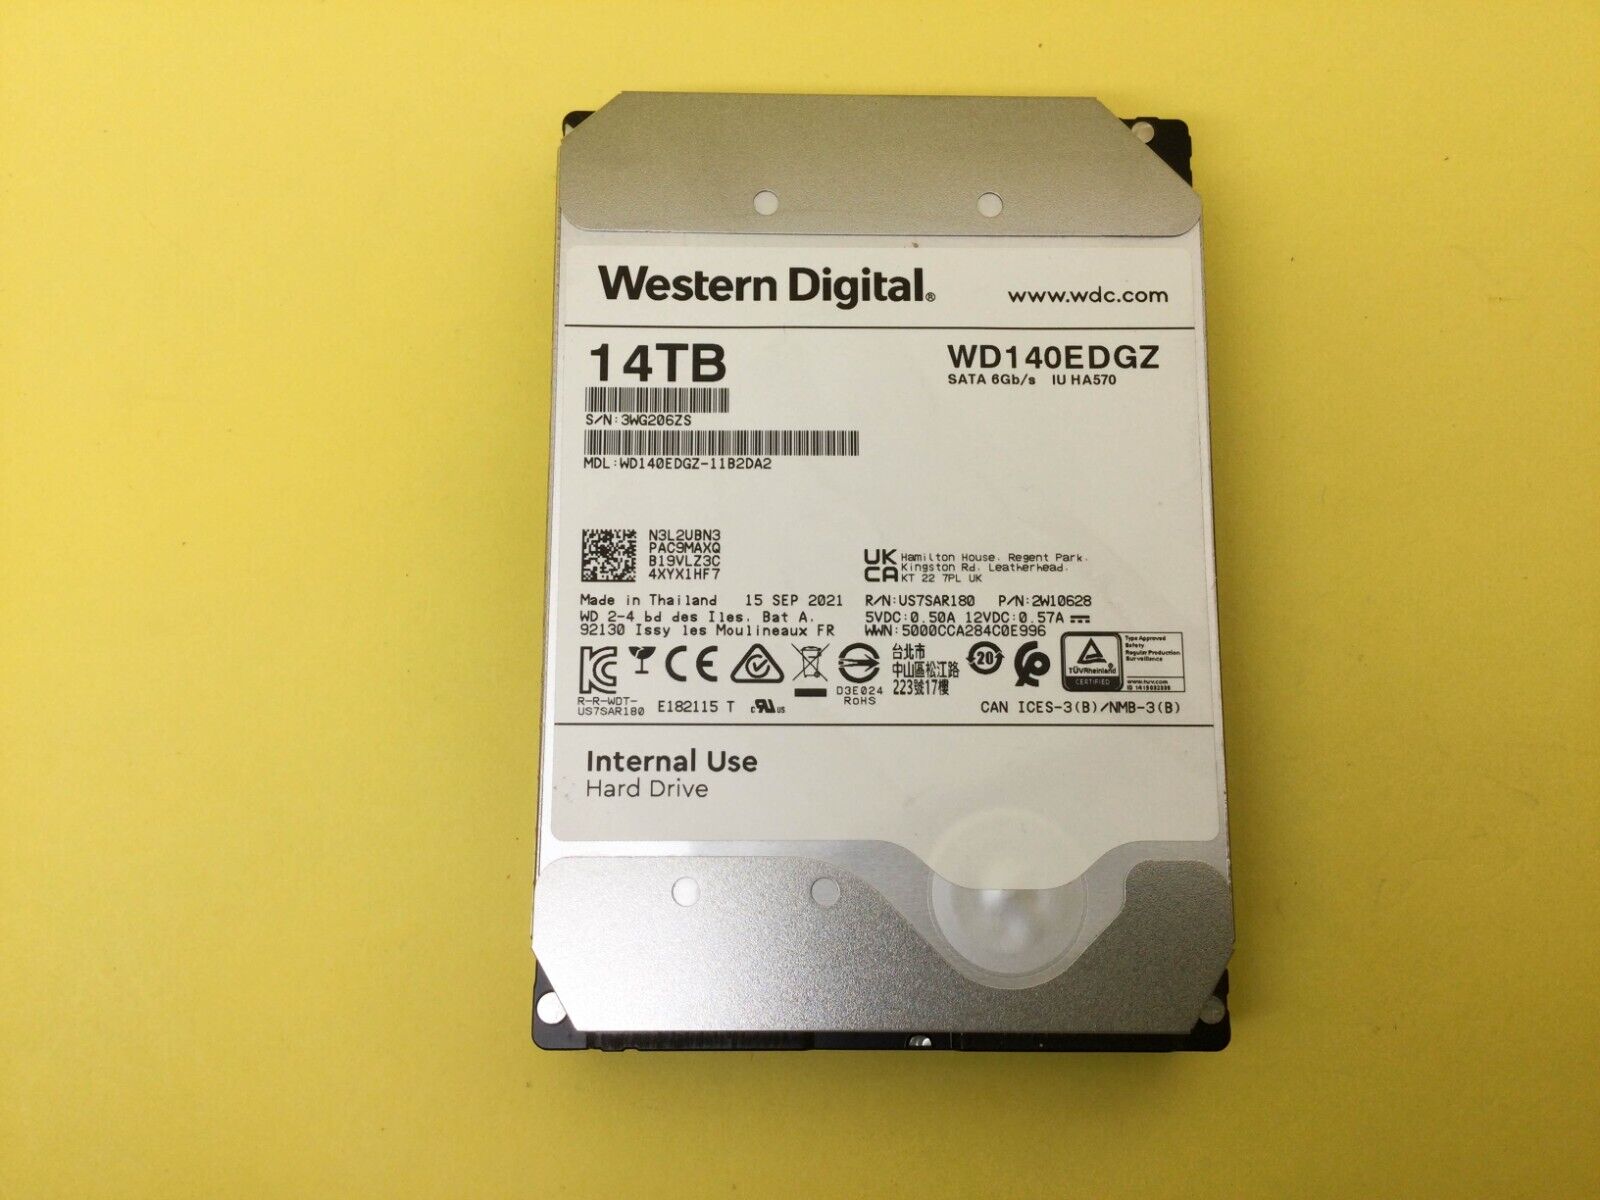 Western Digital 14TB 5400 RPM SATA 6Gb/s 3.5'' HDD WD140EDGZ